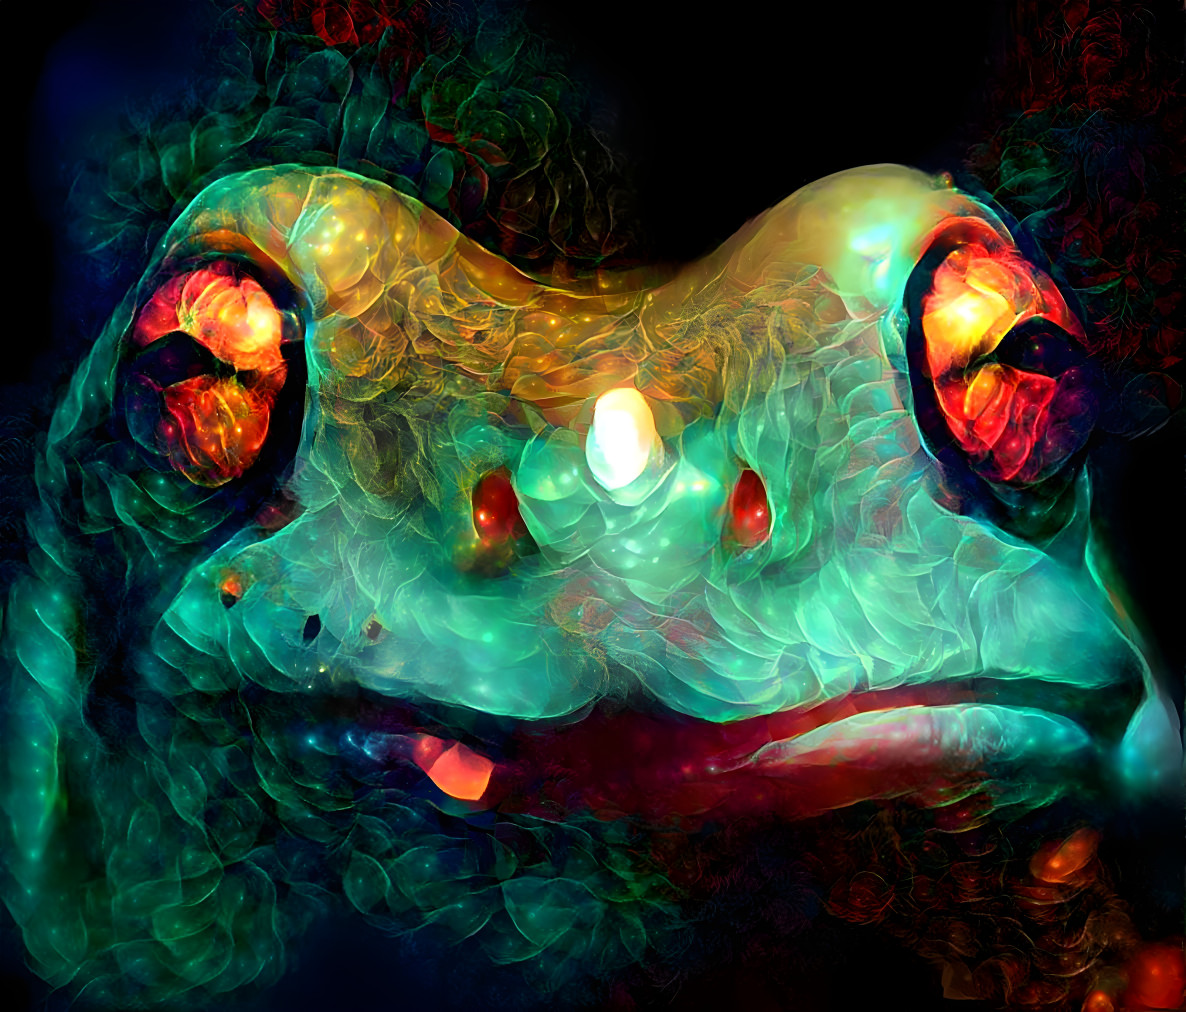 Grumpy frog